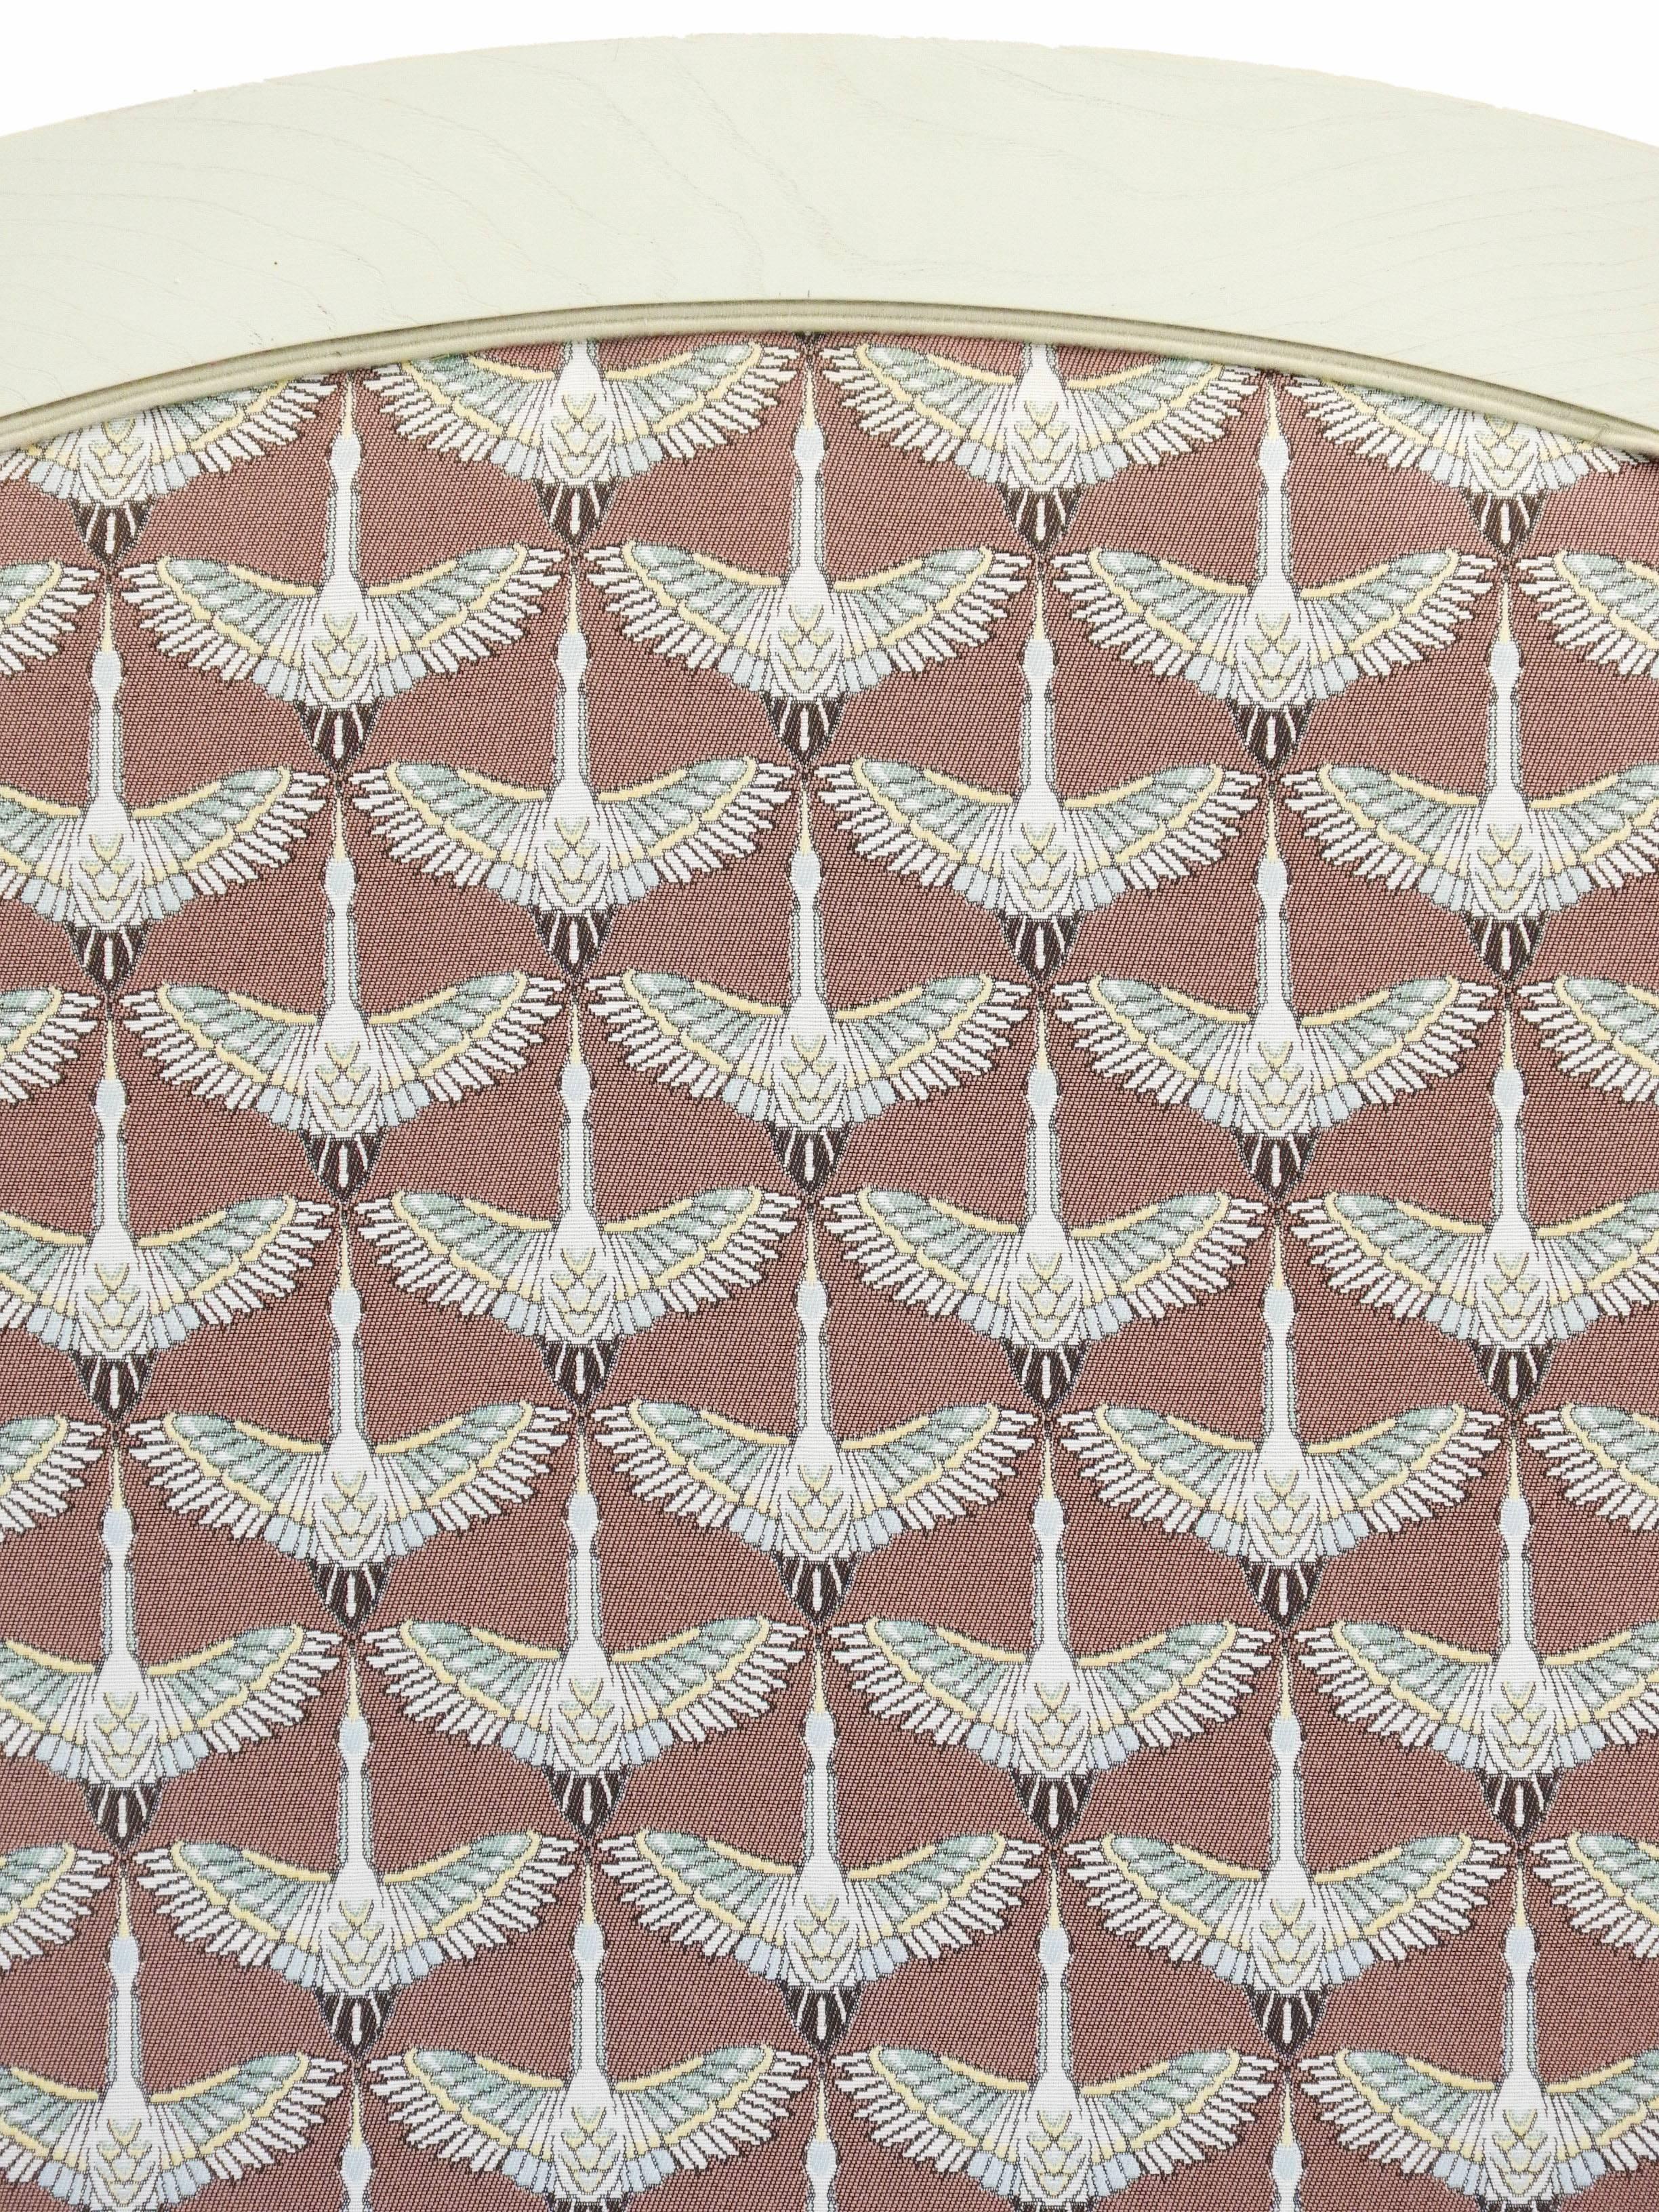 Art Deco Bett um 1930 mit lackiertem Rahmen antik creme neu gepolstert
Obere Bezüge sind Art-Déco-Kraniche im klassischen Stil aus fliegendem Jacquard-Stoff
Wir können die Abdeckungen vor dem Versand in einen Stoff Ihrer Wahl (und die Farbe) ändern,